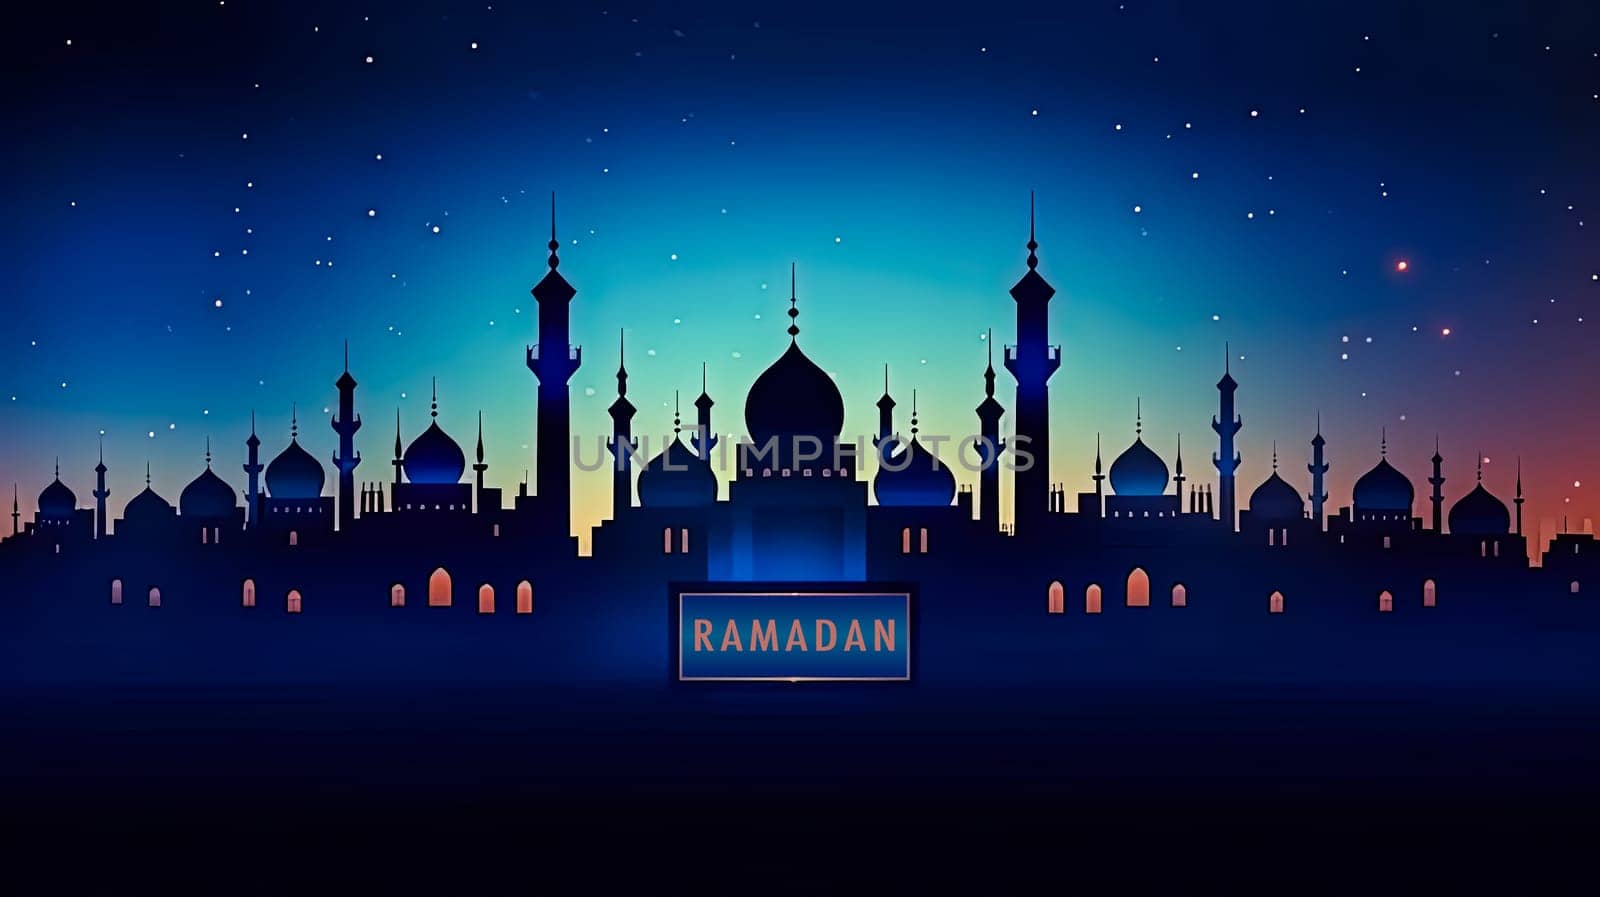 A mosque illuminated at night Ramadan Mubarak by Alla_Morozova93